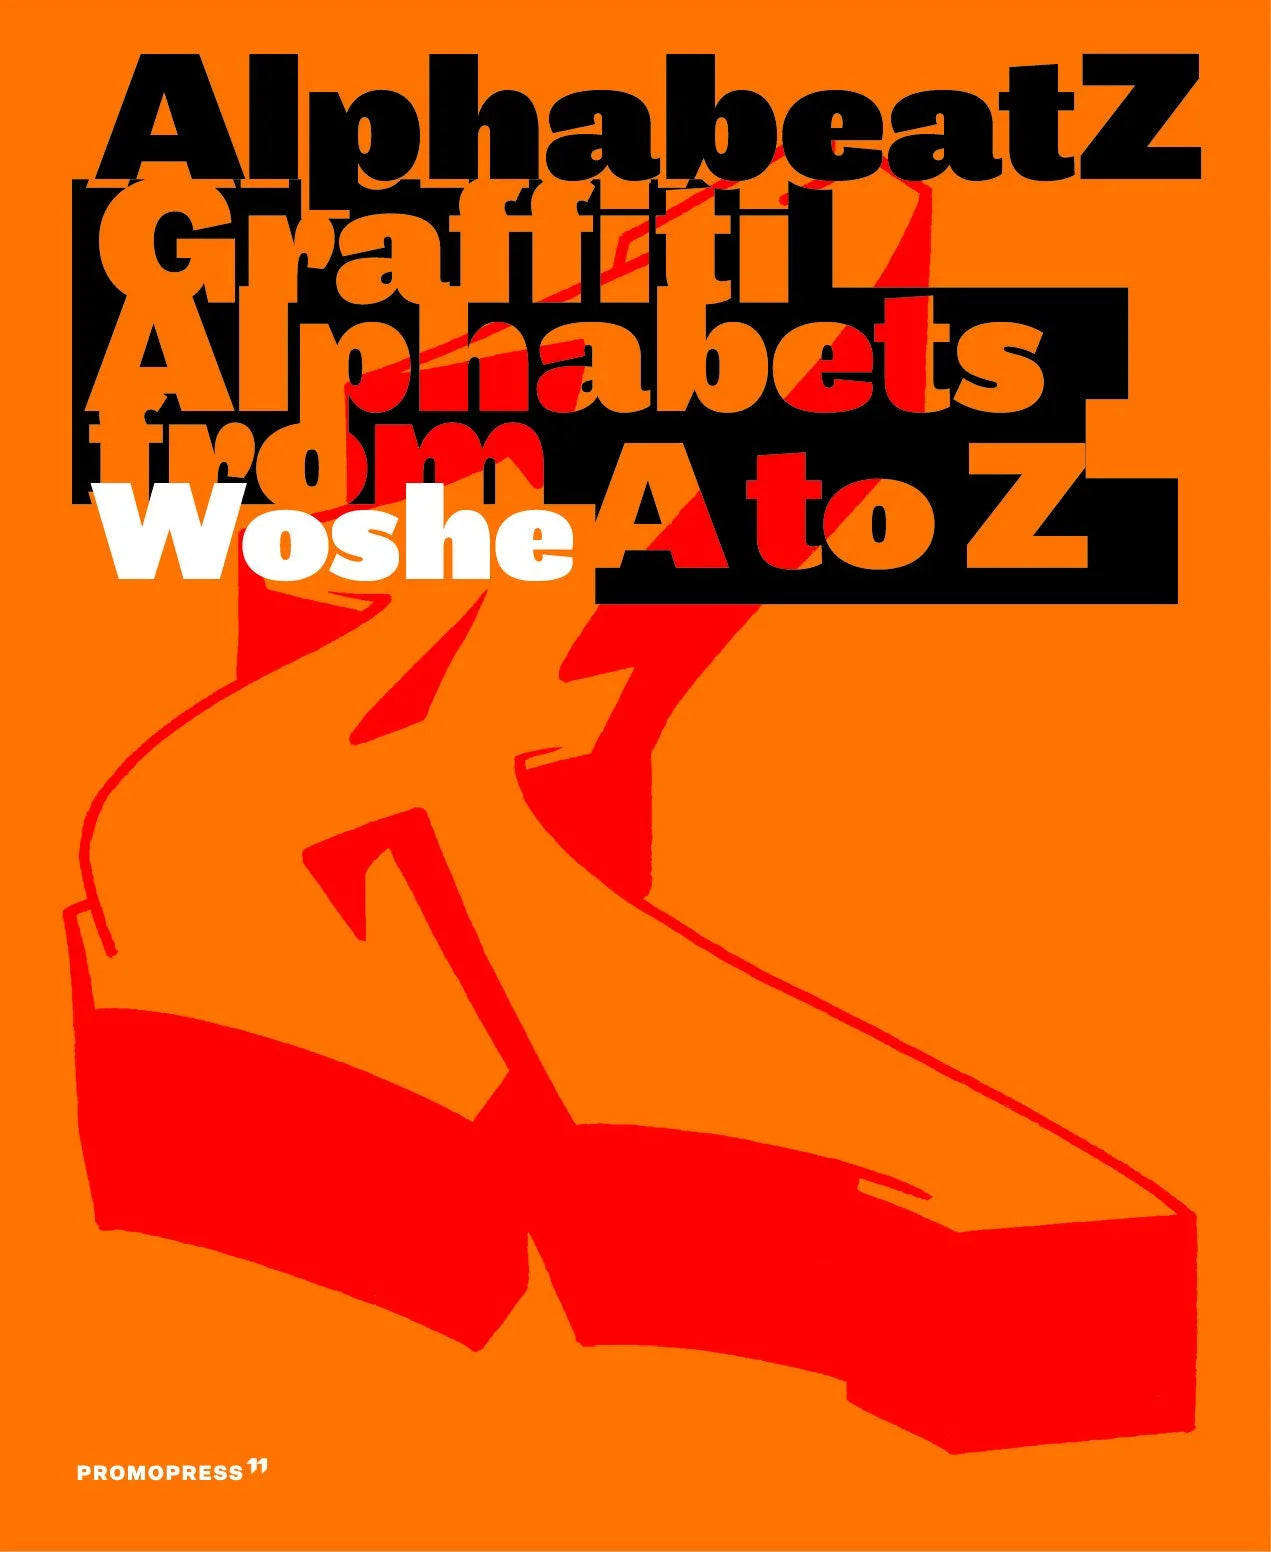 Alphabeatz Graffiti Alphabets